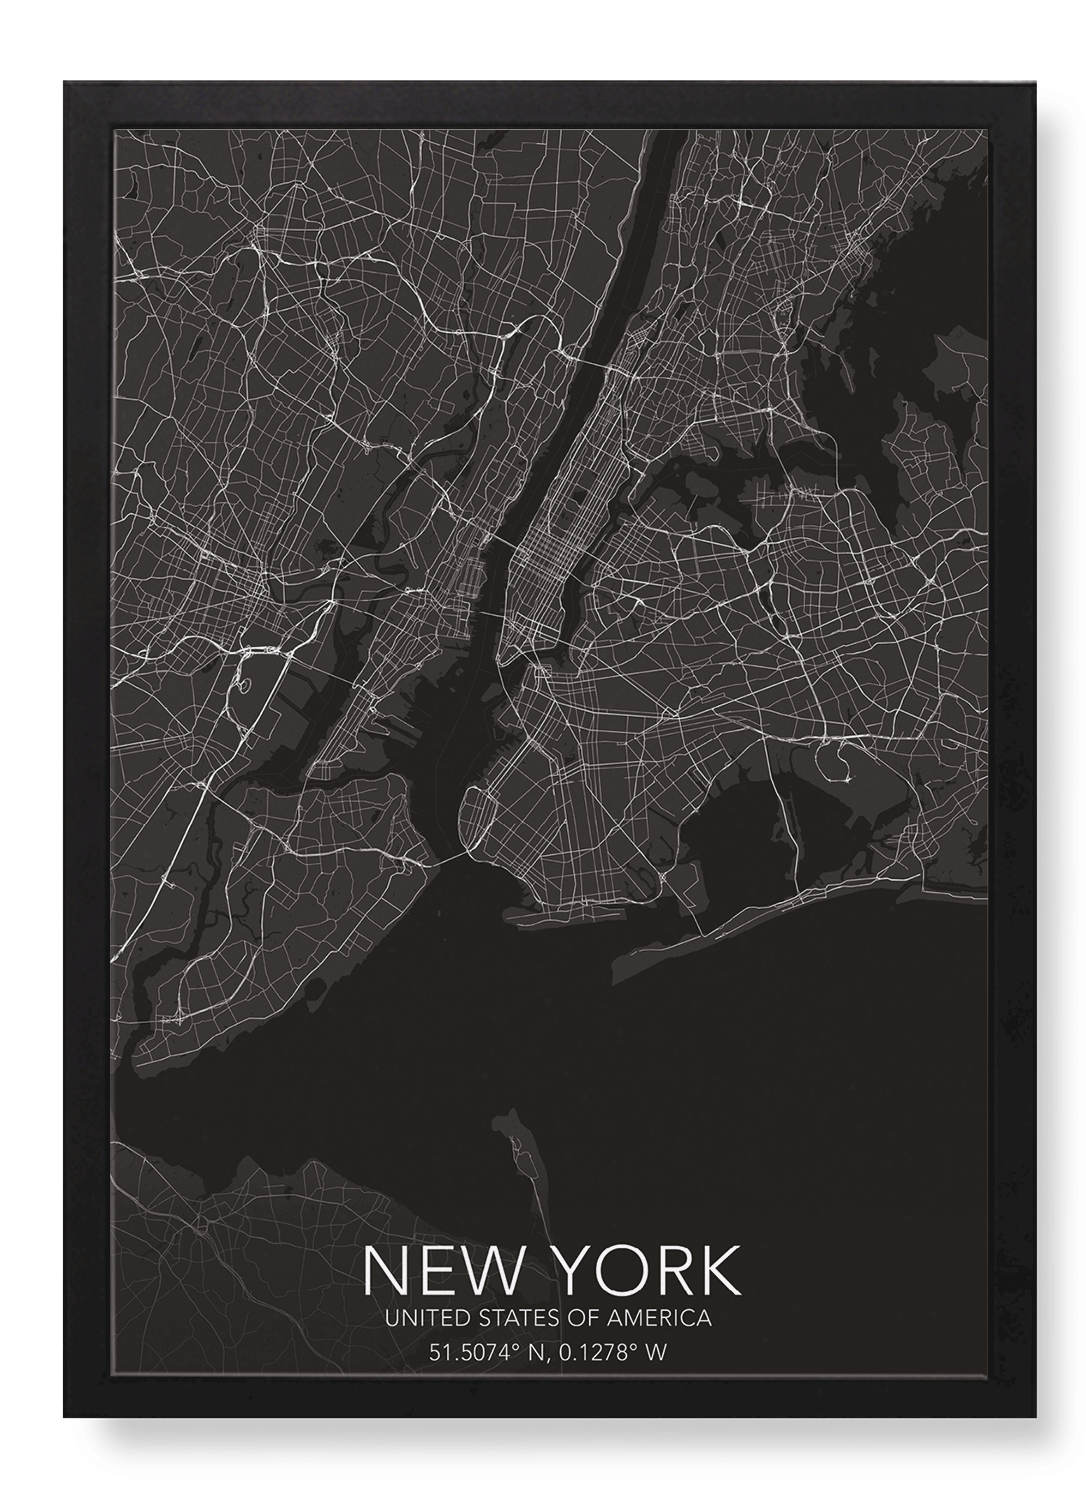 NEW YORK FULL MAP